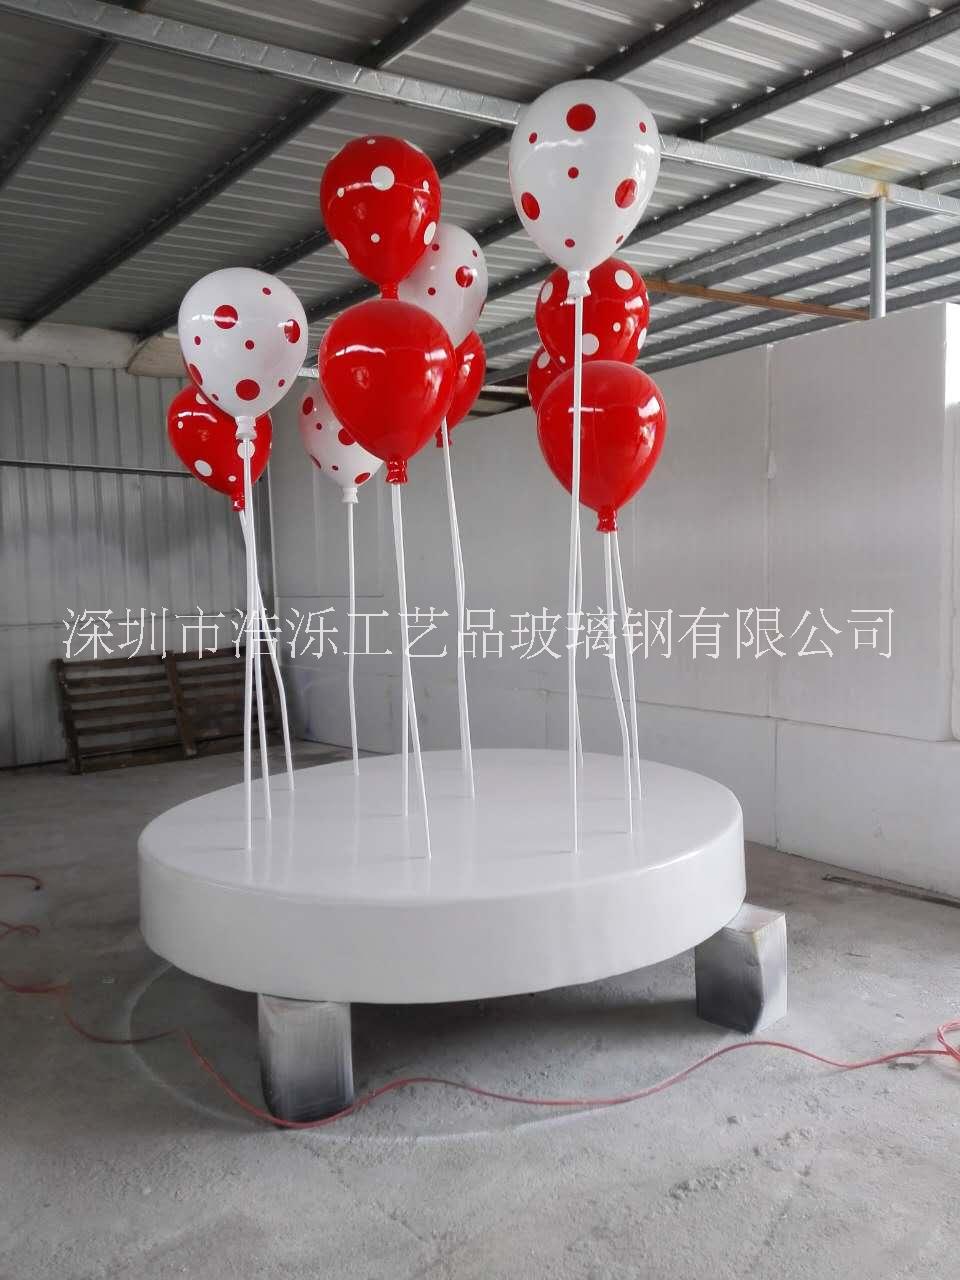 仿真气球雕塑 商场开业装饰氢气球雕塑 玻璃钢气球造型图片